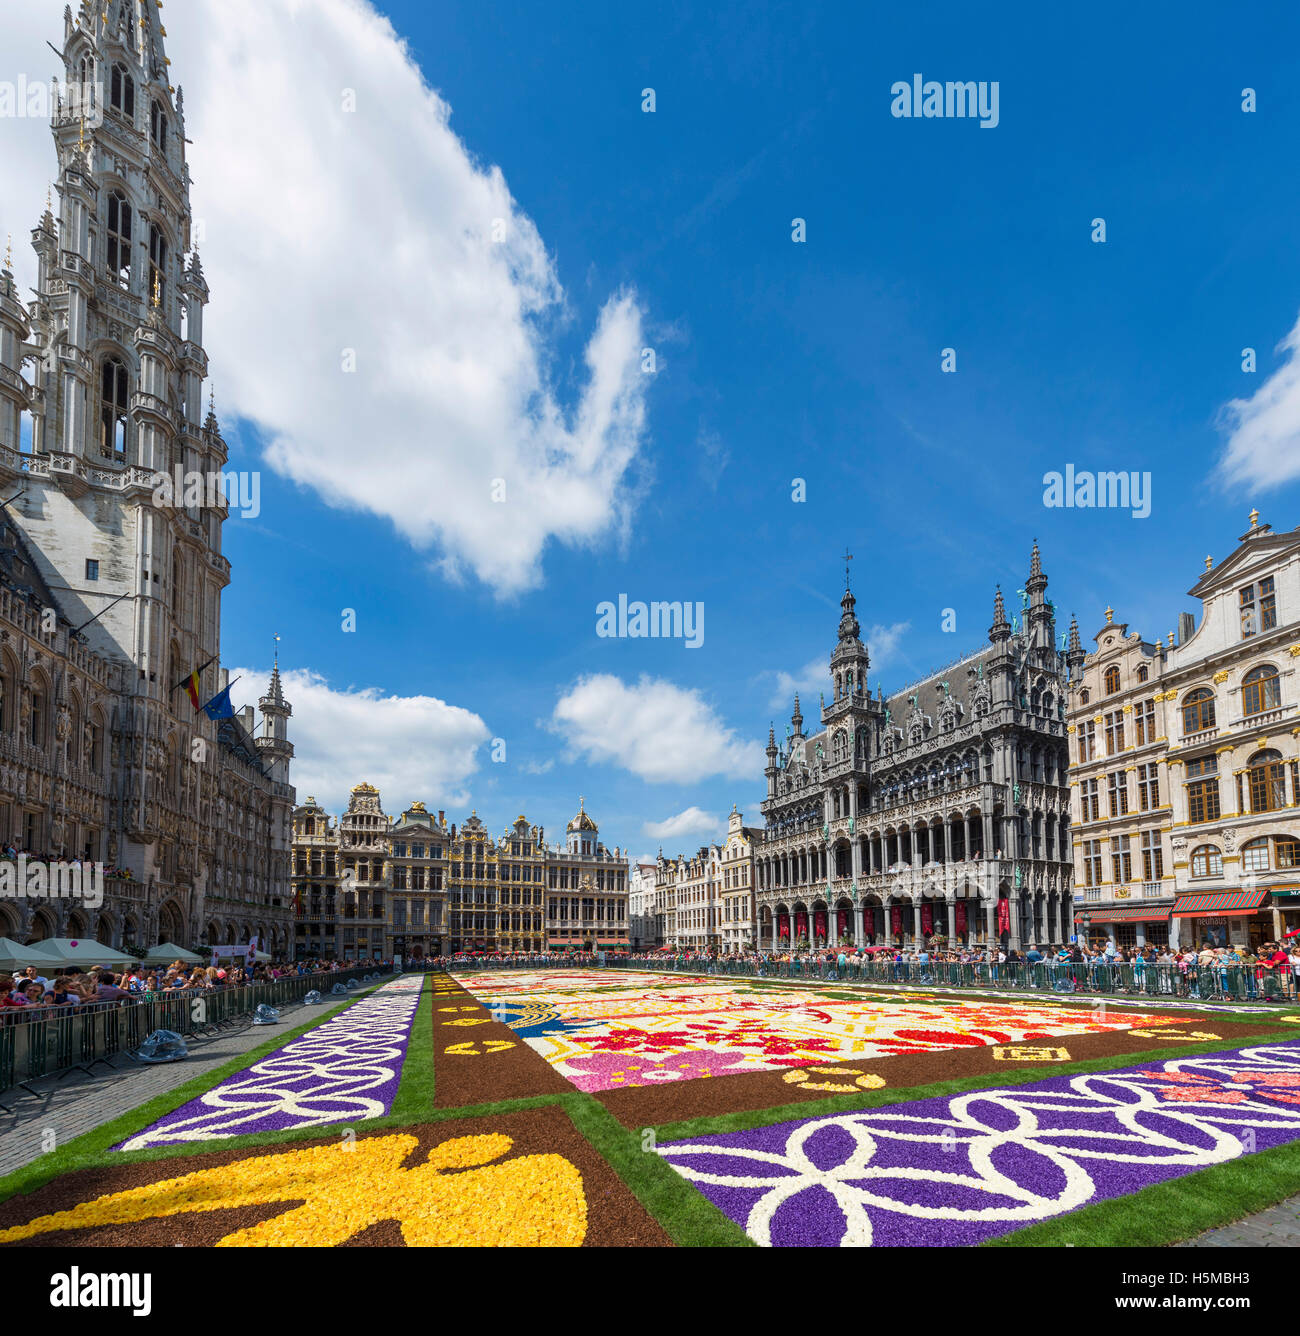 2016 Le tapis de fleurs de la Grand Place (Grote Markt) avec l'Hôtel de Ville à gauche, Bruxelles, Belgique. Banque D'Images